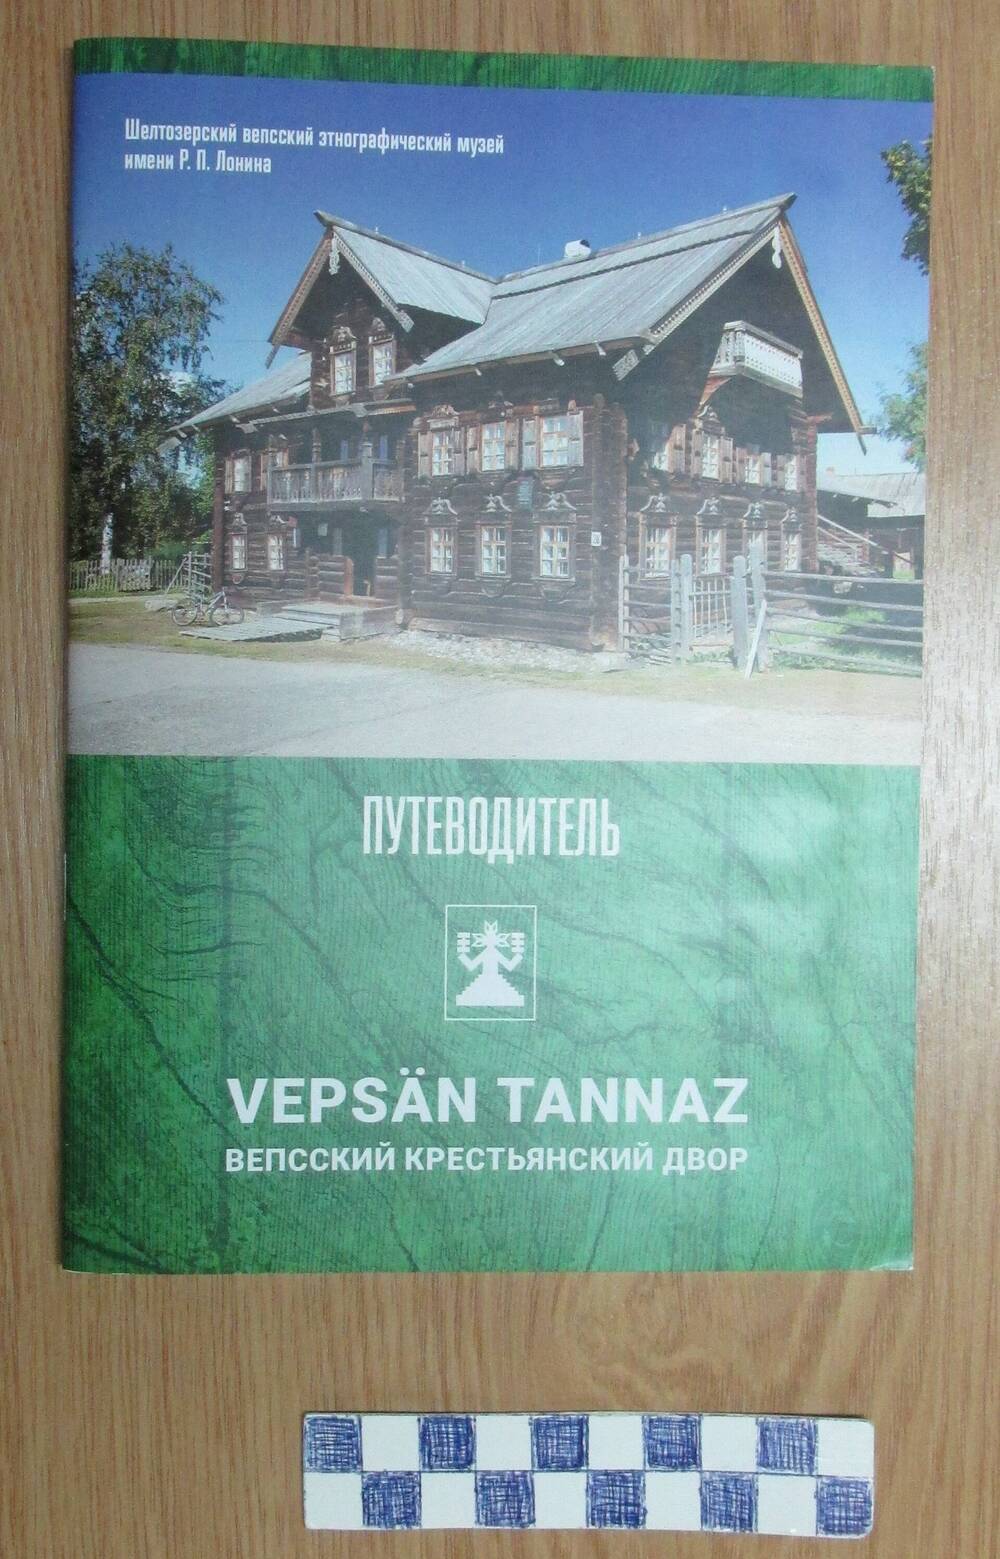 Брошюра  - путеводитель «Vepsän tannaz» Вепсский крестьянский двор.